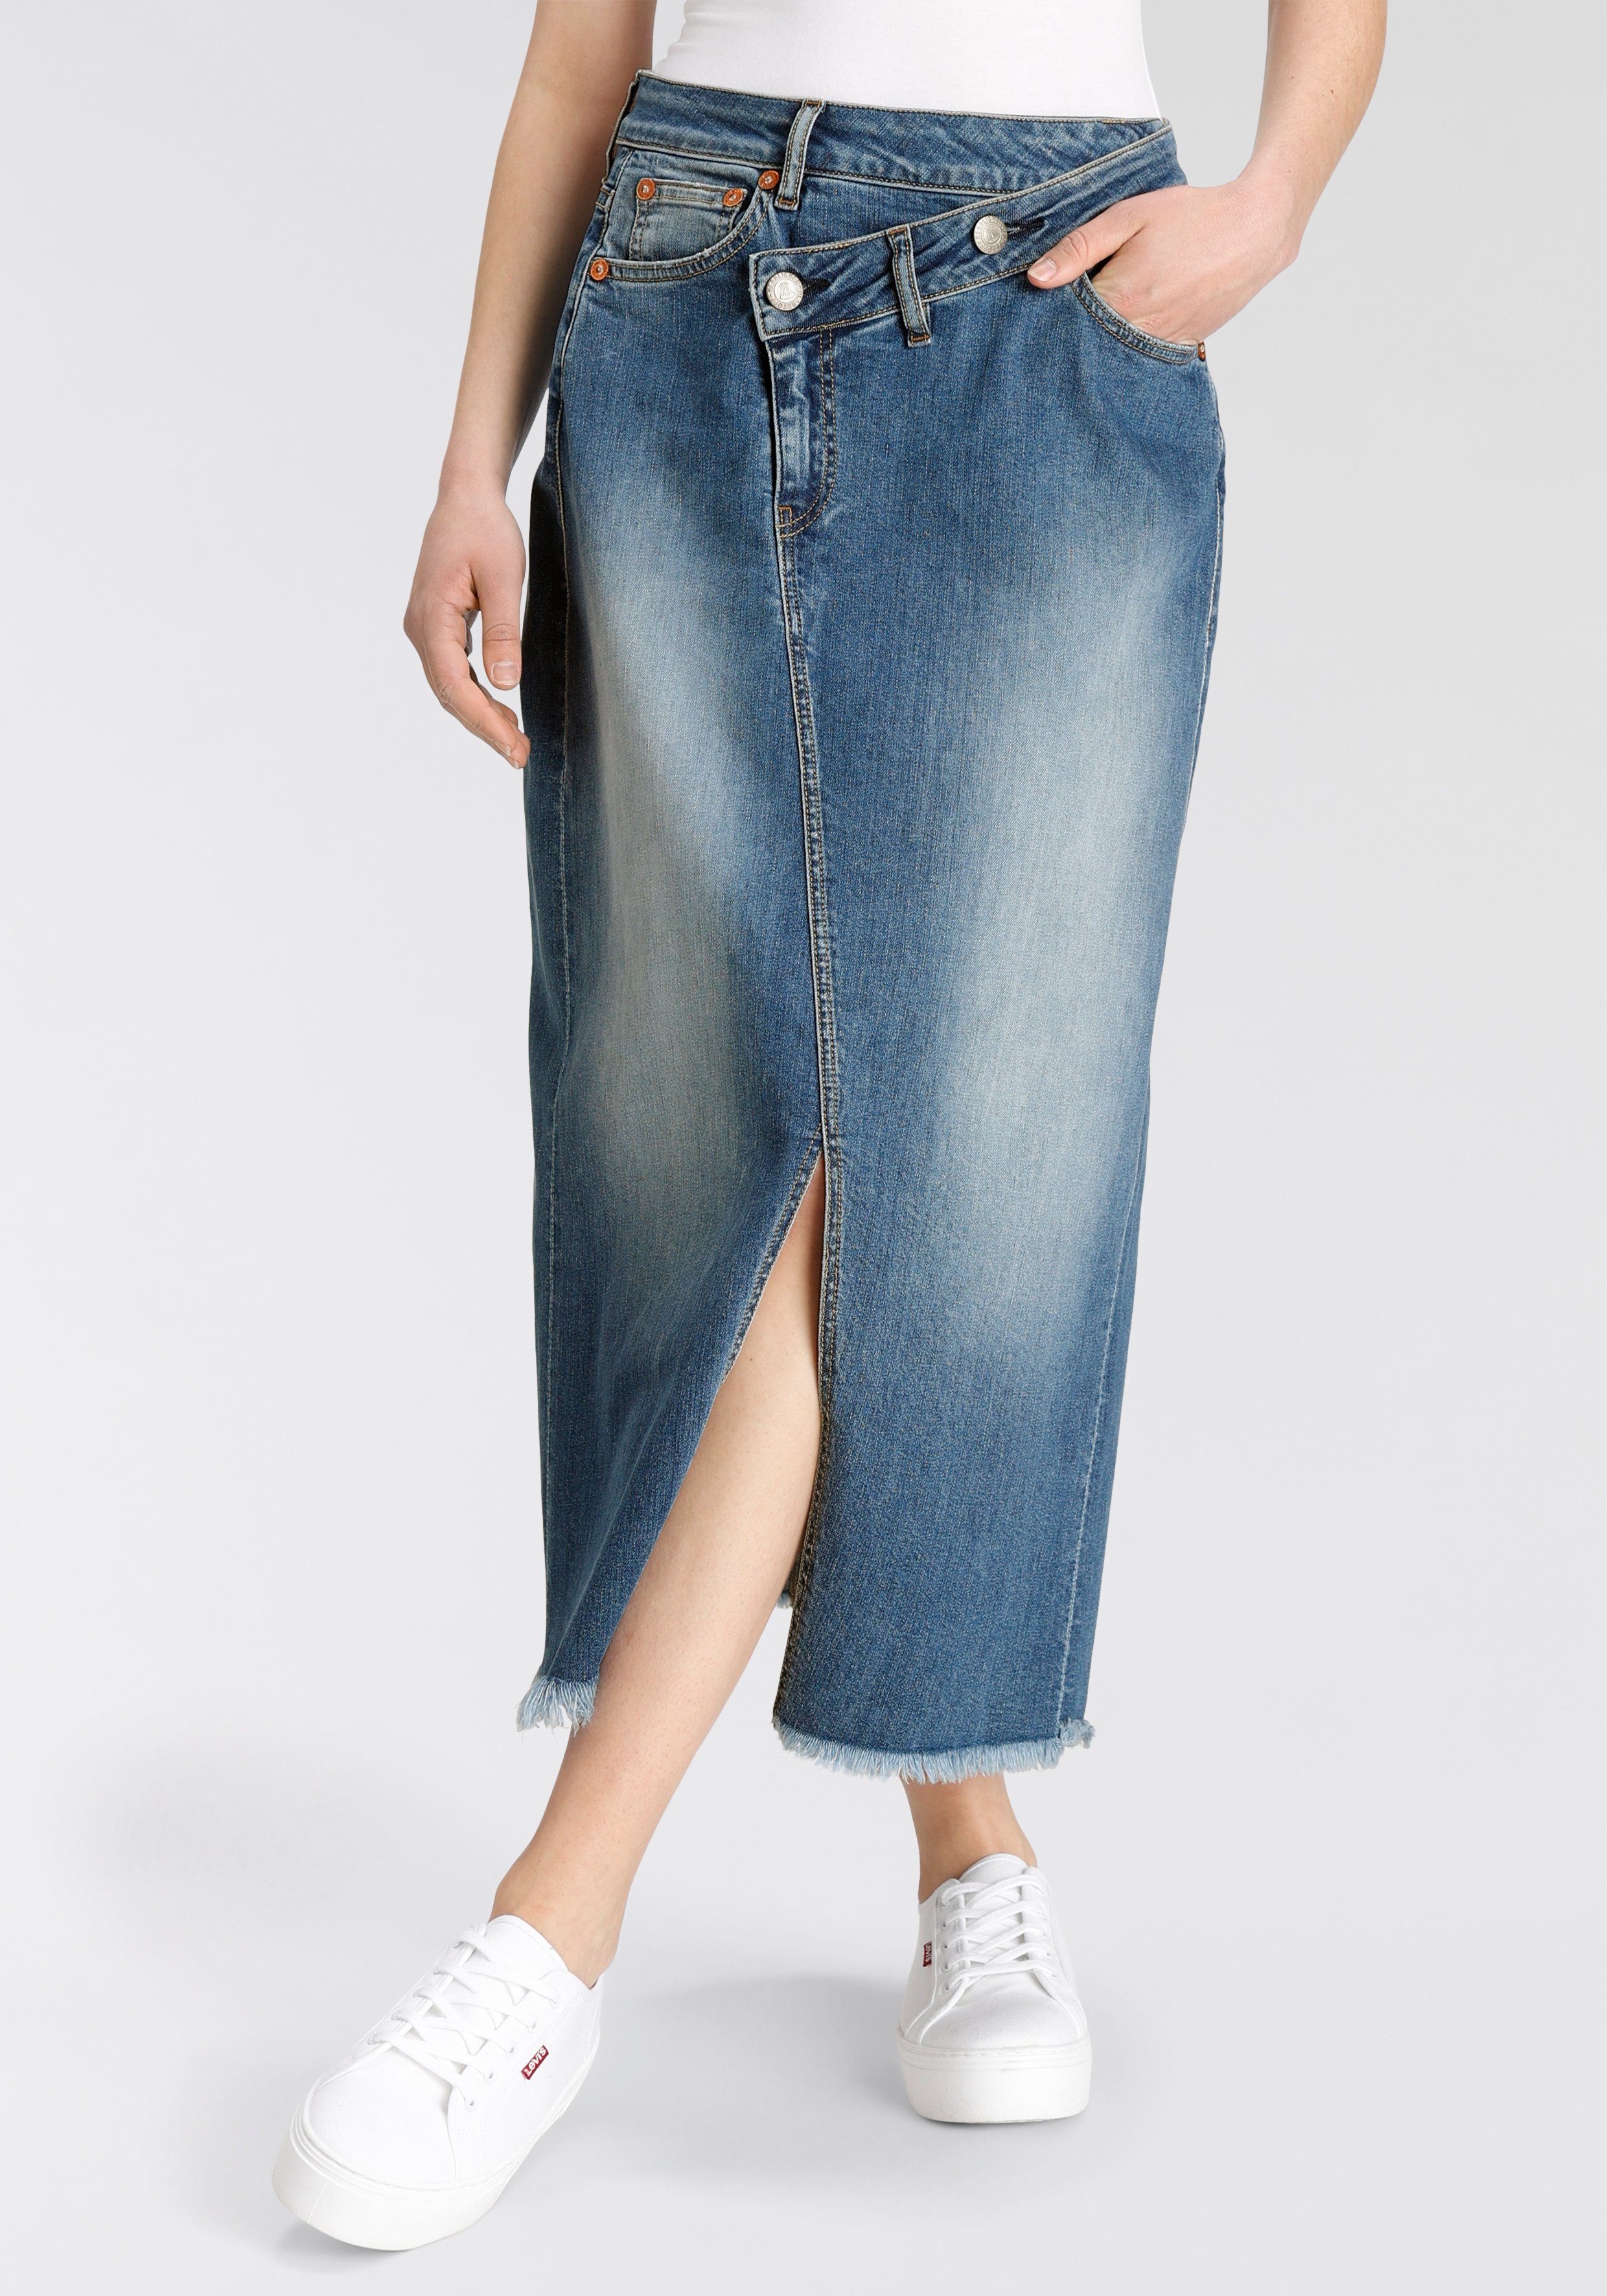 Herrlicher Jeansrock Mäze Long Skirt Organic Denim Mit Asymmetrischem Bund als Hingucker | Jeansröcke